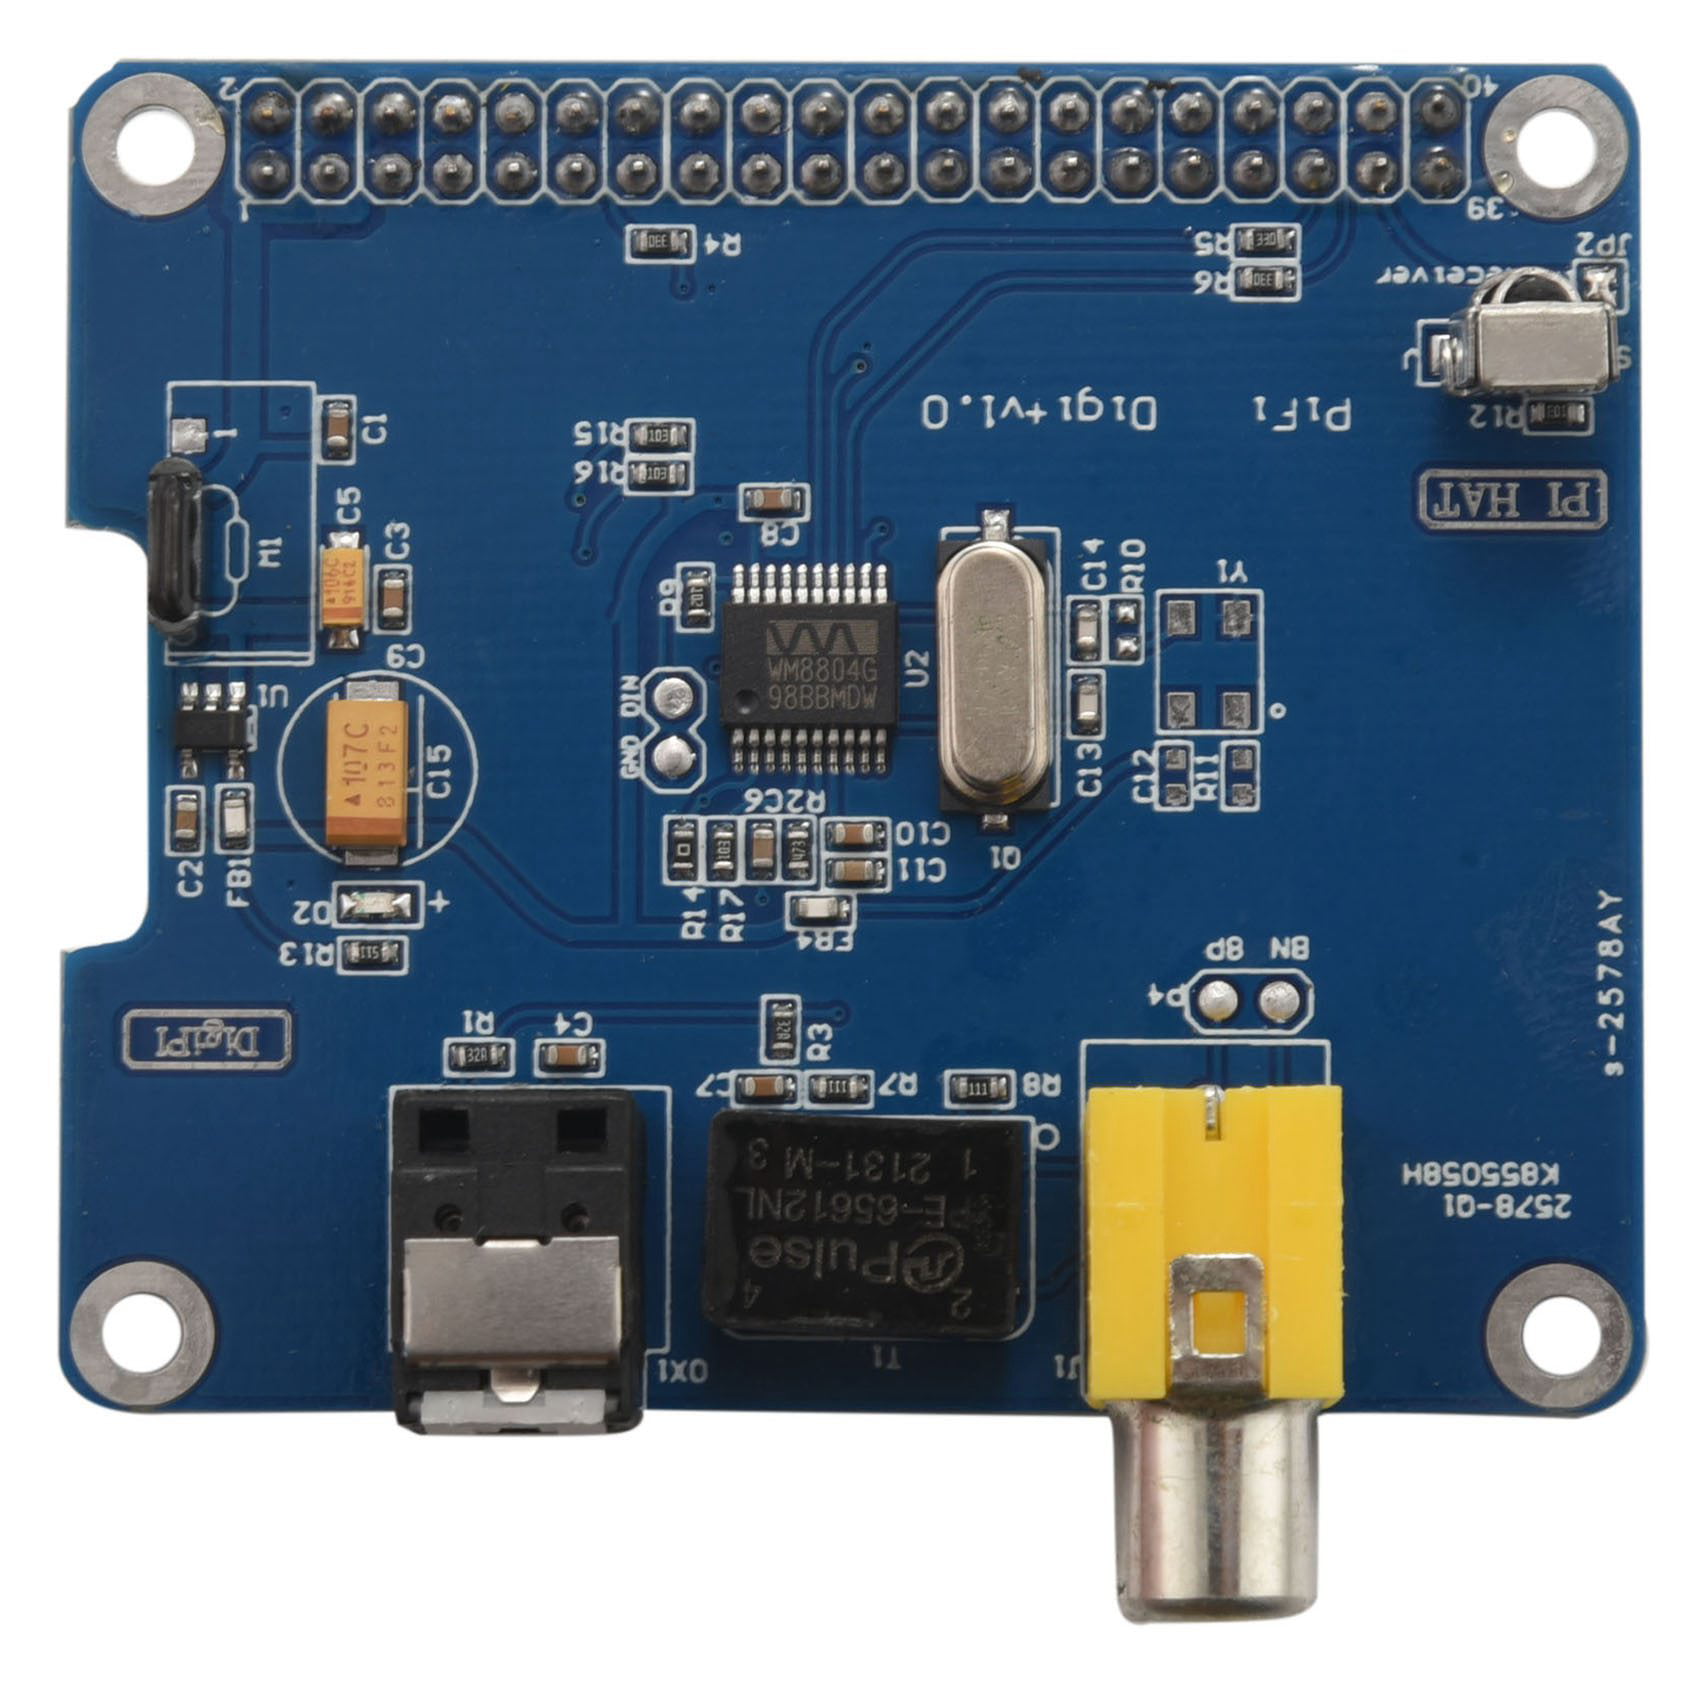 HIFI DiGi+ Digital Sound Card I2S SPDIF Optical Fiber for Raspberry Pi 3 B Plus / 3B / Pi 2 Model and B+ / - Walmart.com